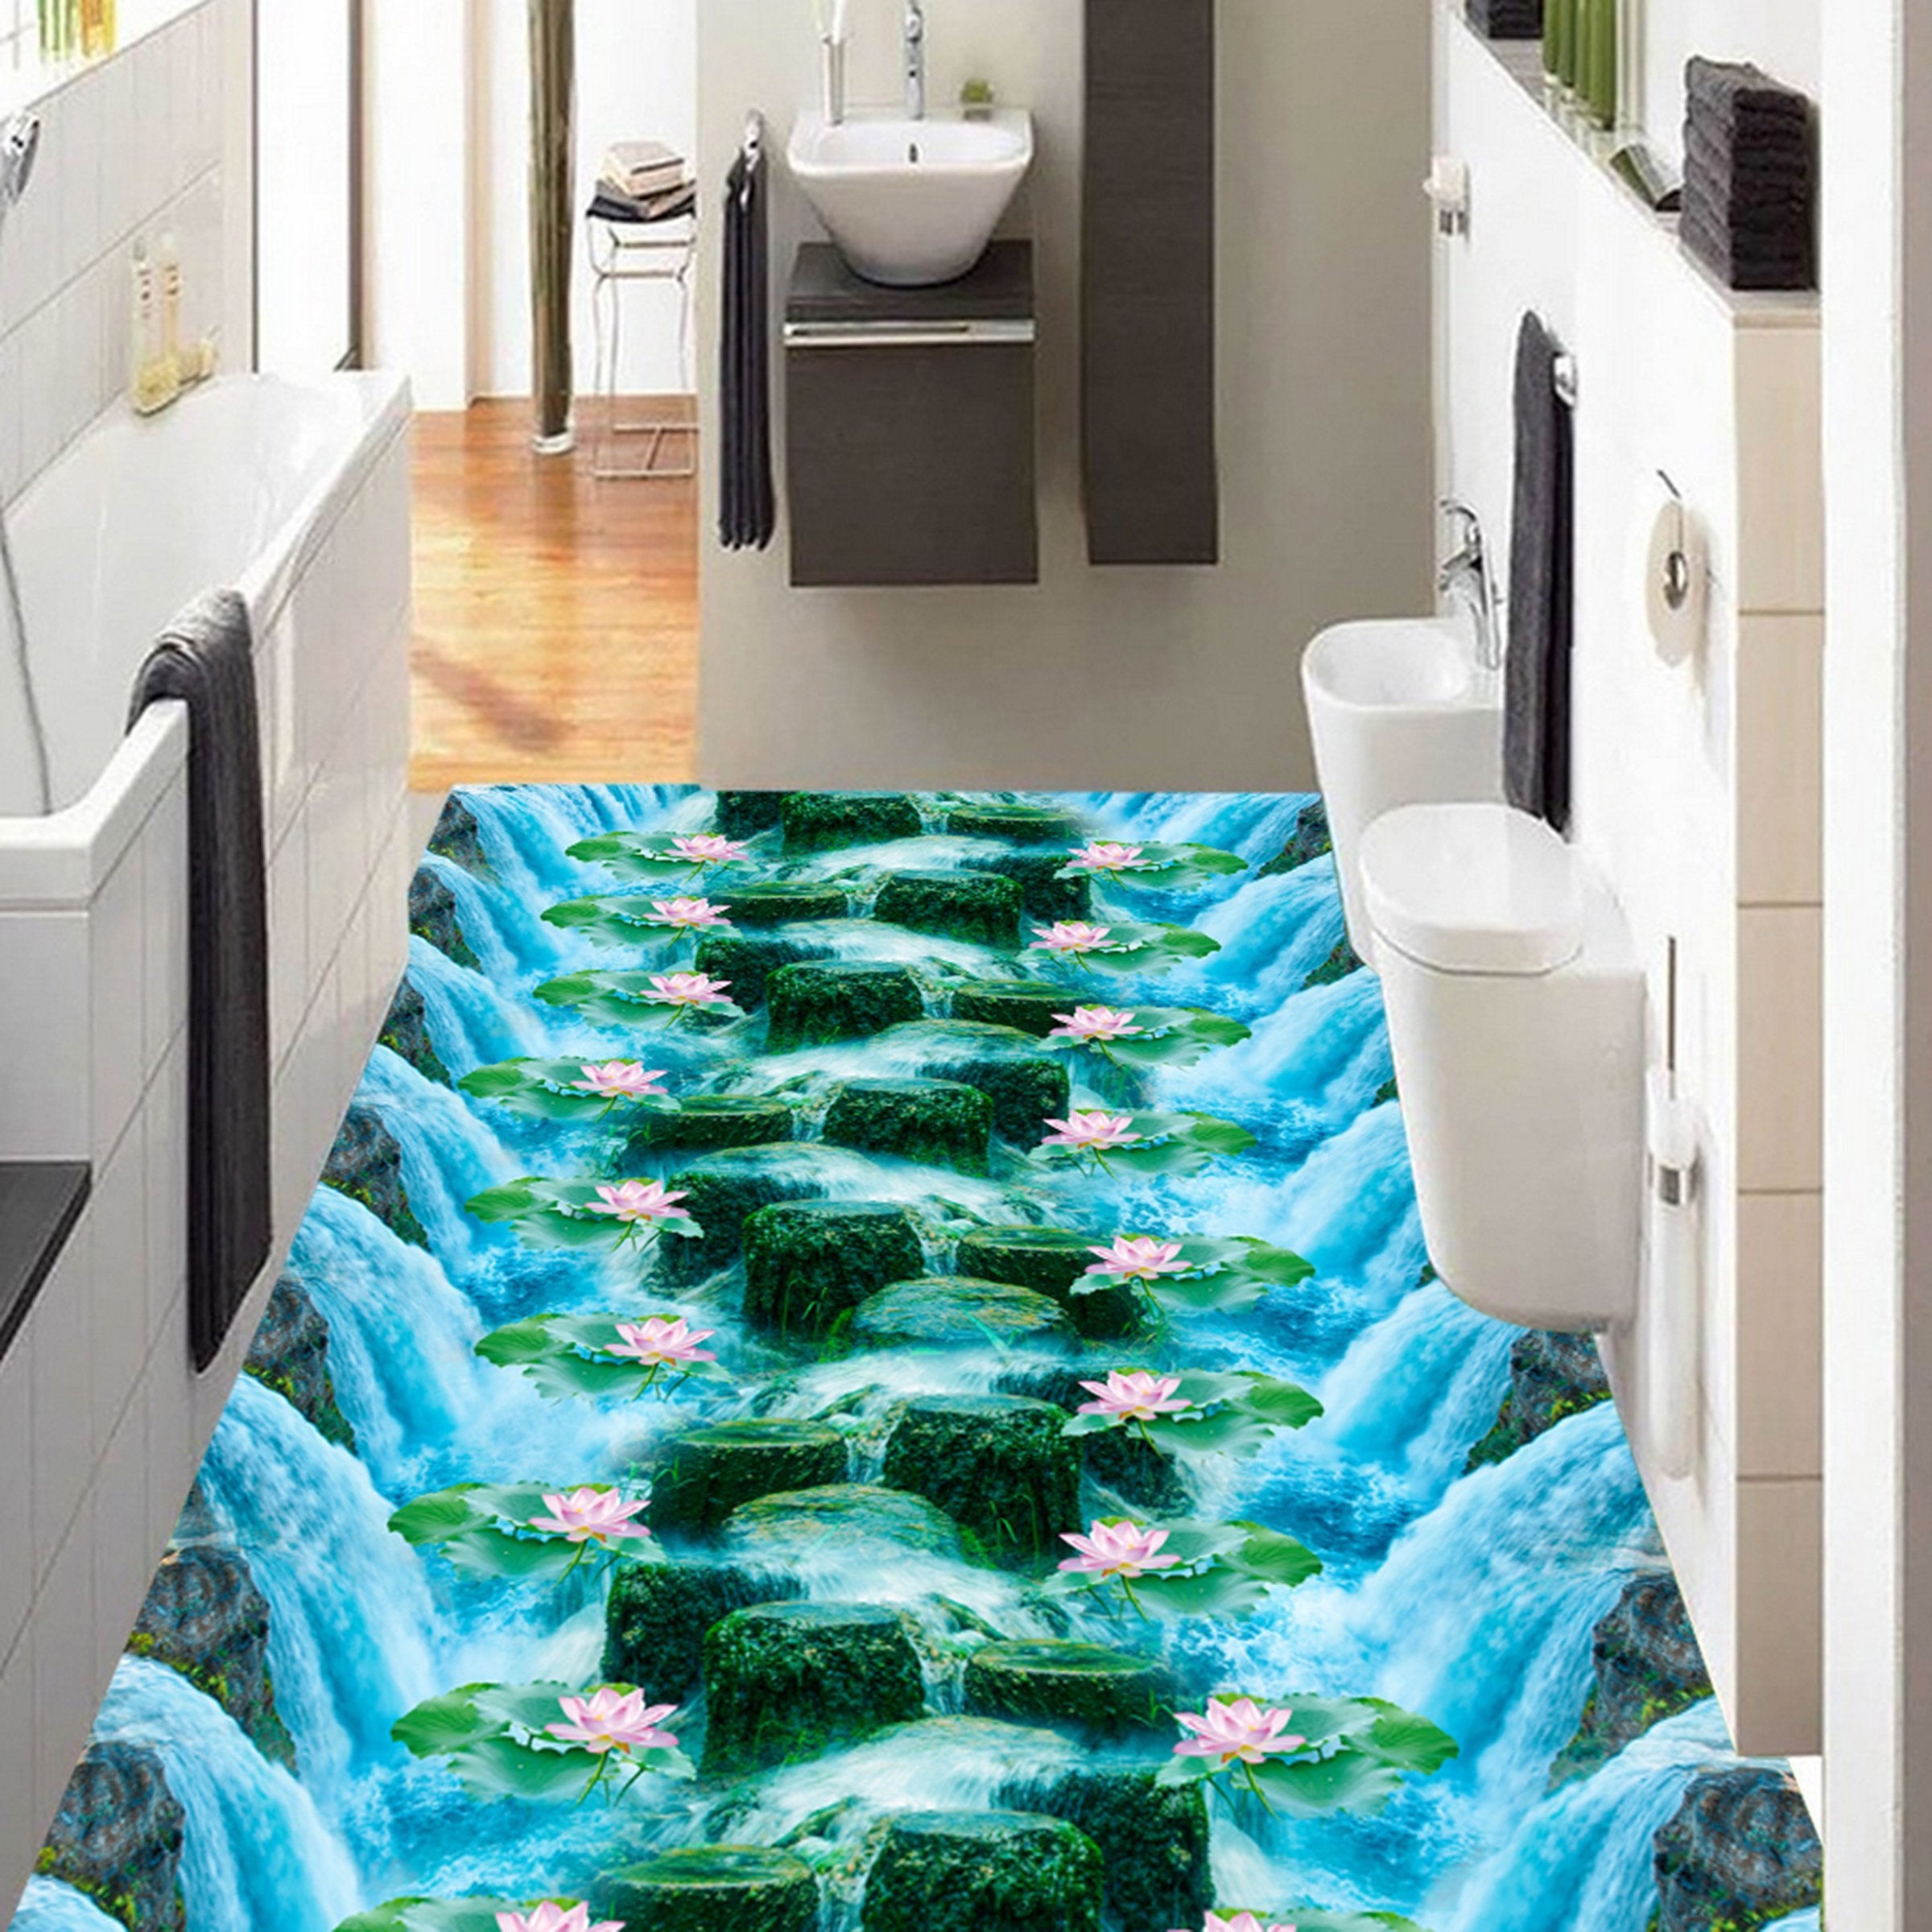 3D Water Lotus WG379 Floor Mural Wallpaper AJ Wallpaper 2 